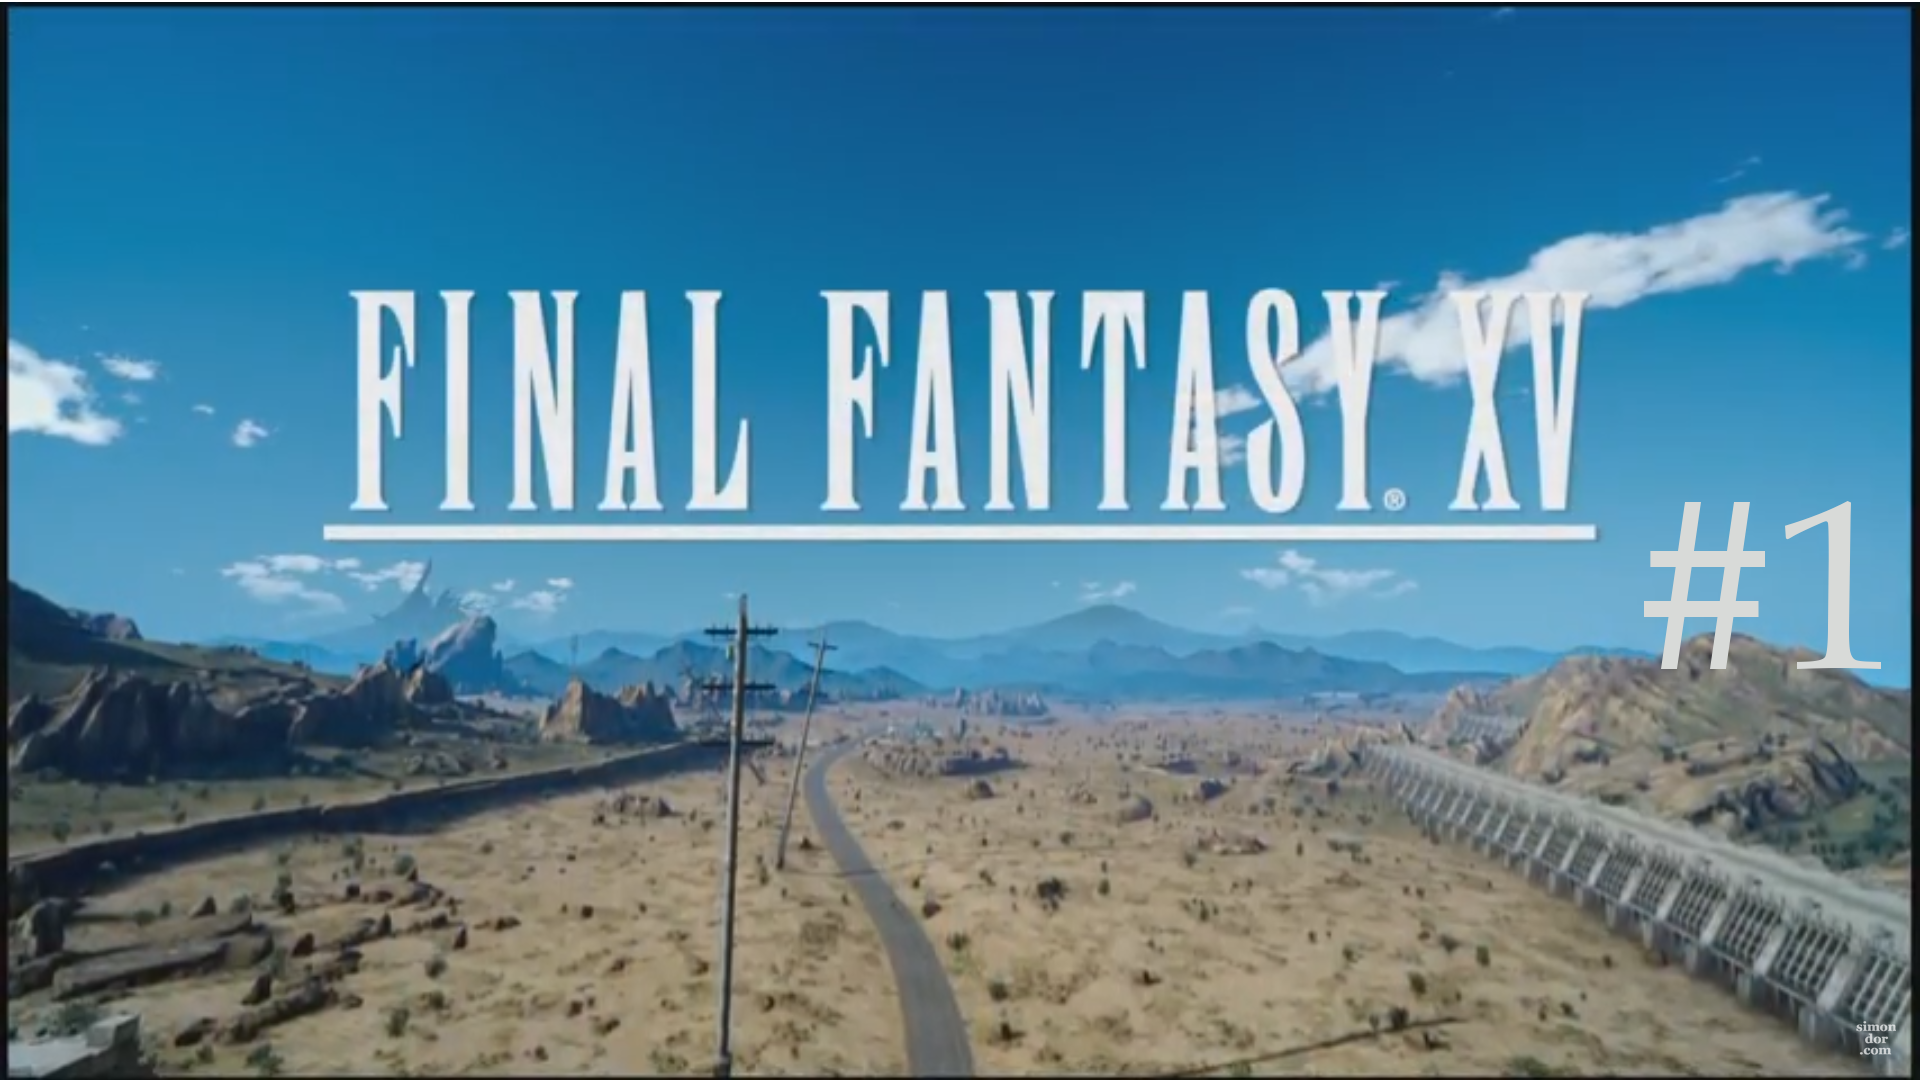 Final Fantasy XV (Square Enix, 2016)